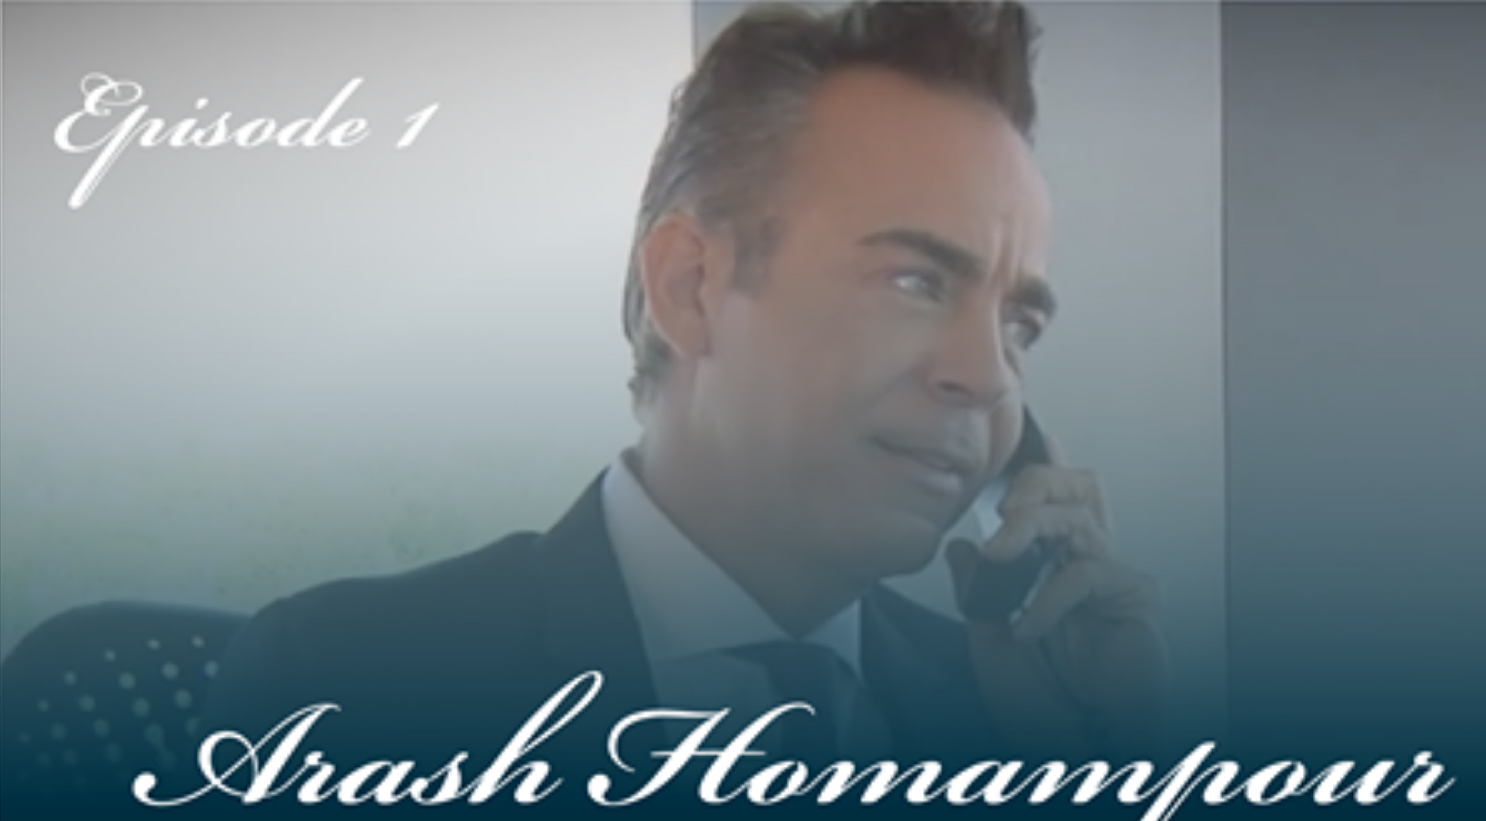 Episode 1 - Arash Homampour